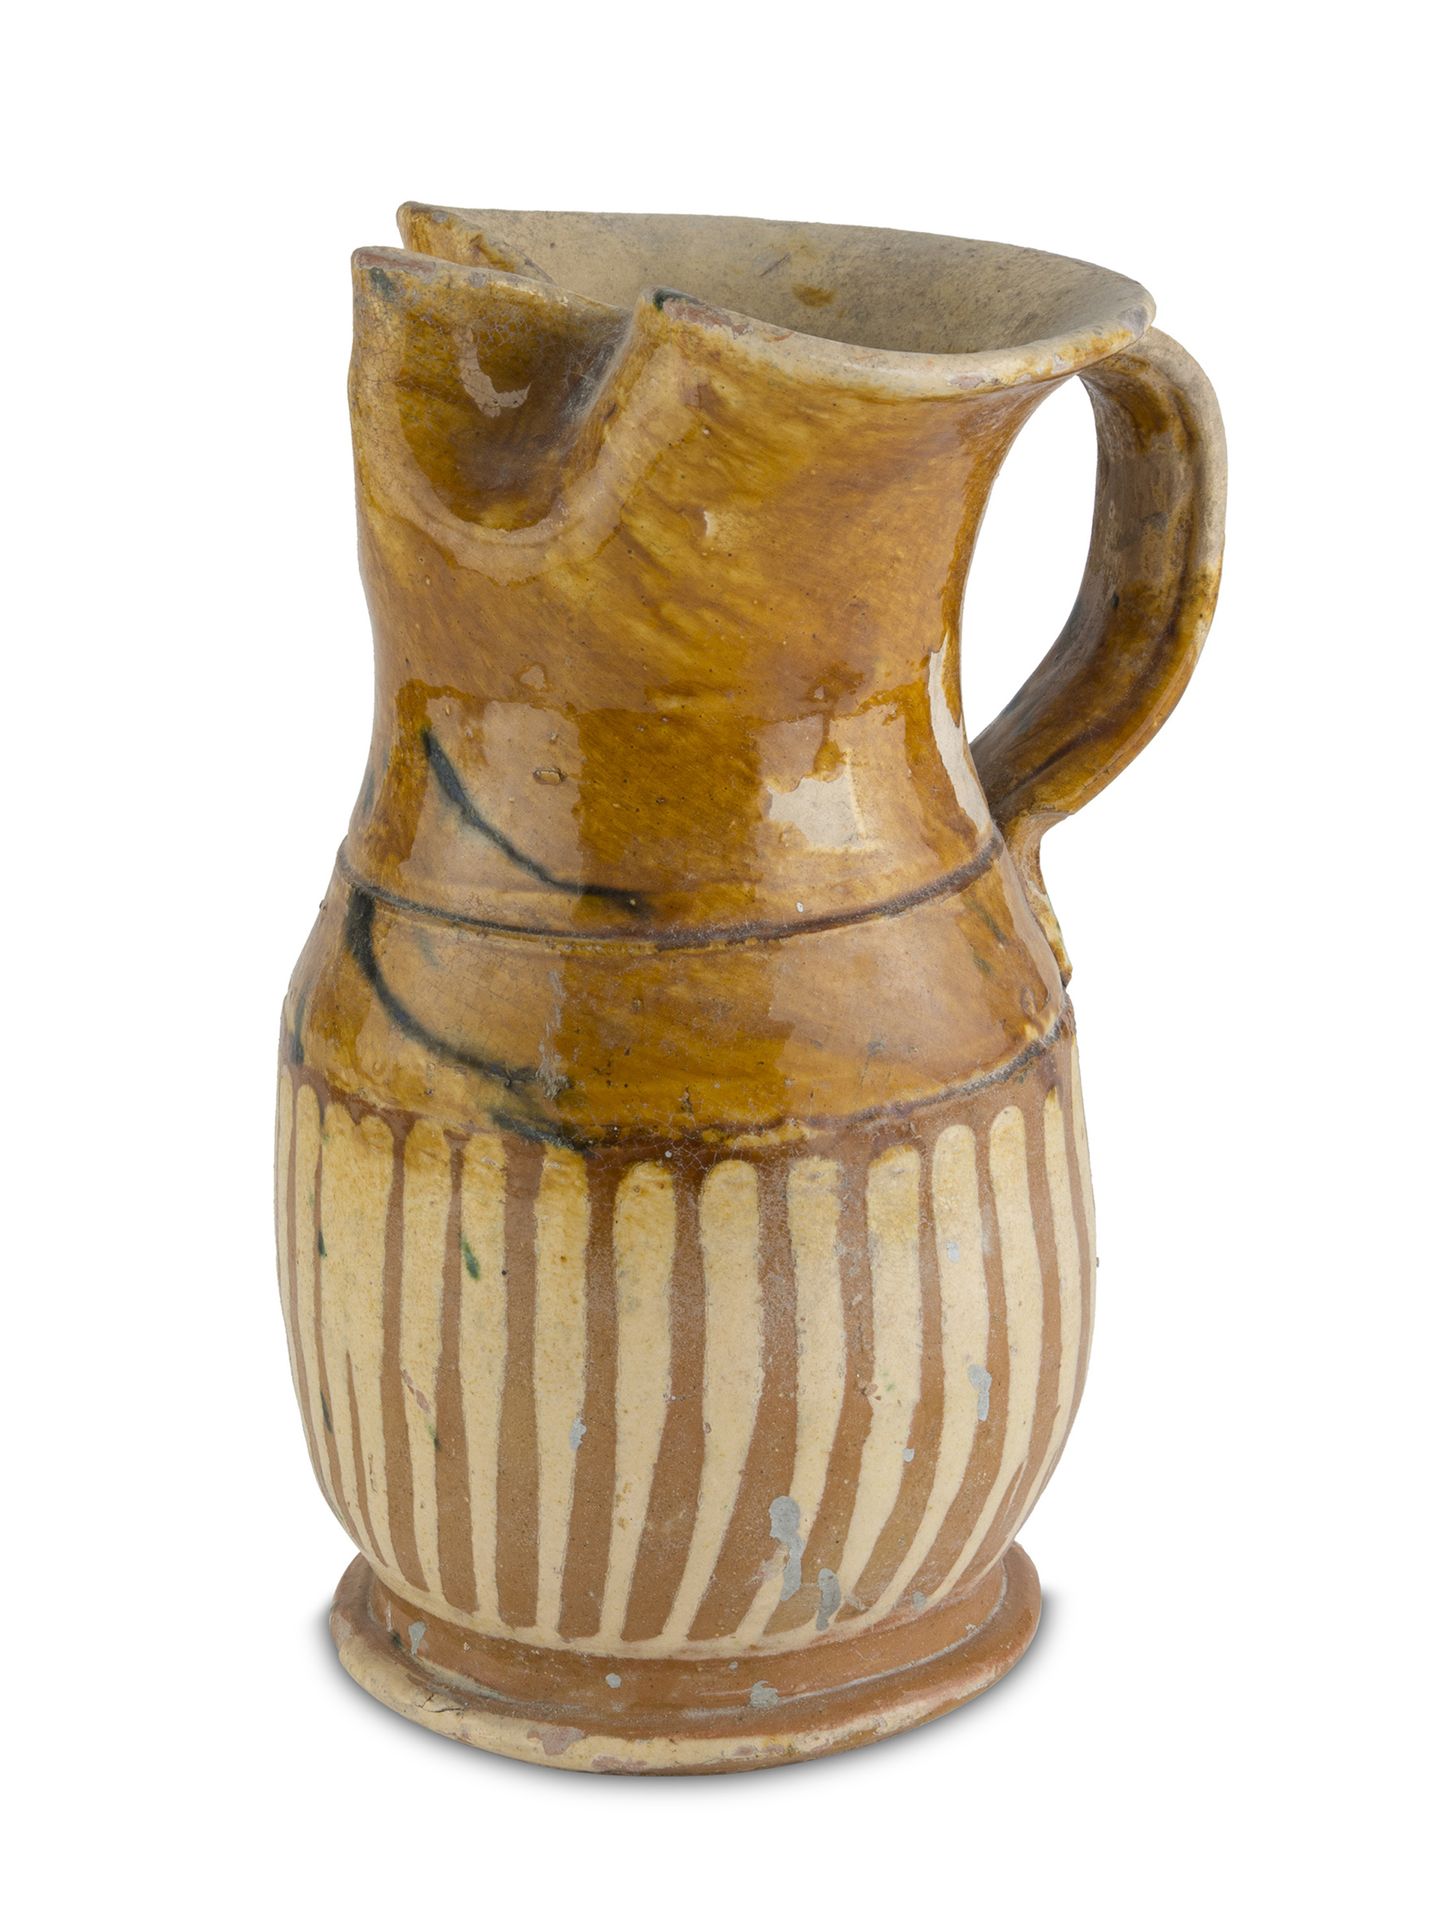 Null 陶罐，卡拉布里亚 19世纪末

乳白色和棕色的珐琅，有手帕口。

尺寸 cm. 32 x 20 x 20.